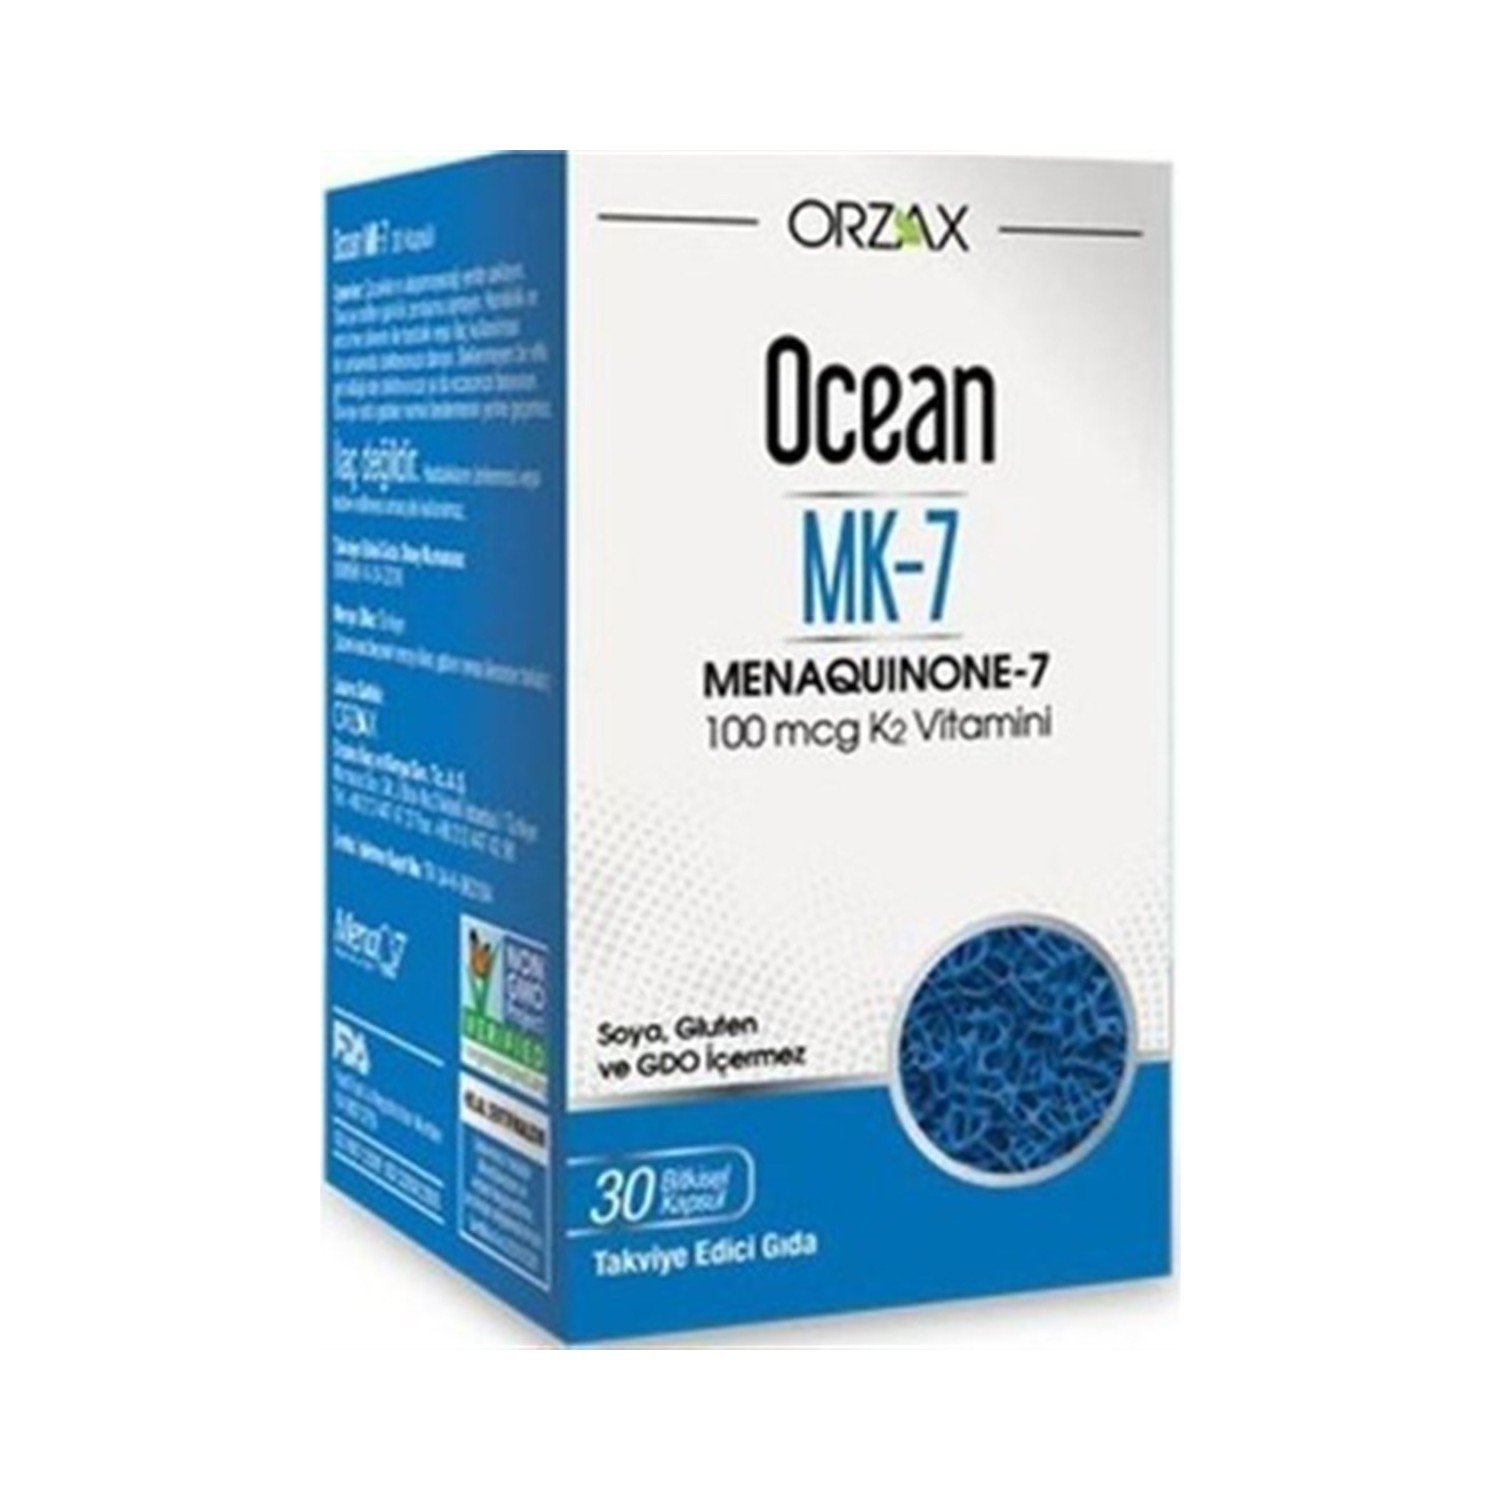 цена Менахинон-7 Ocean Orzax, 30 капсул